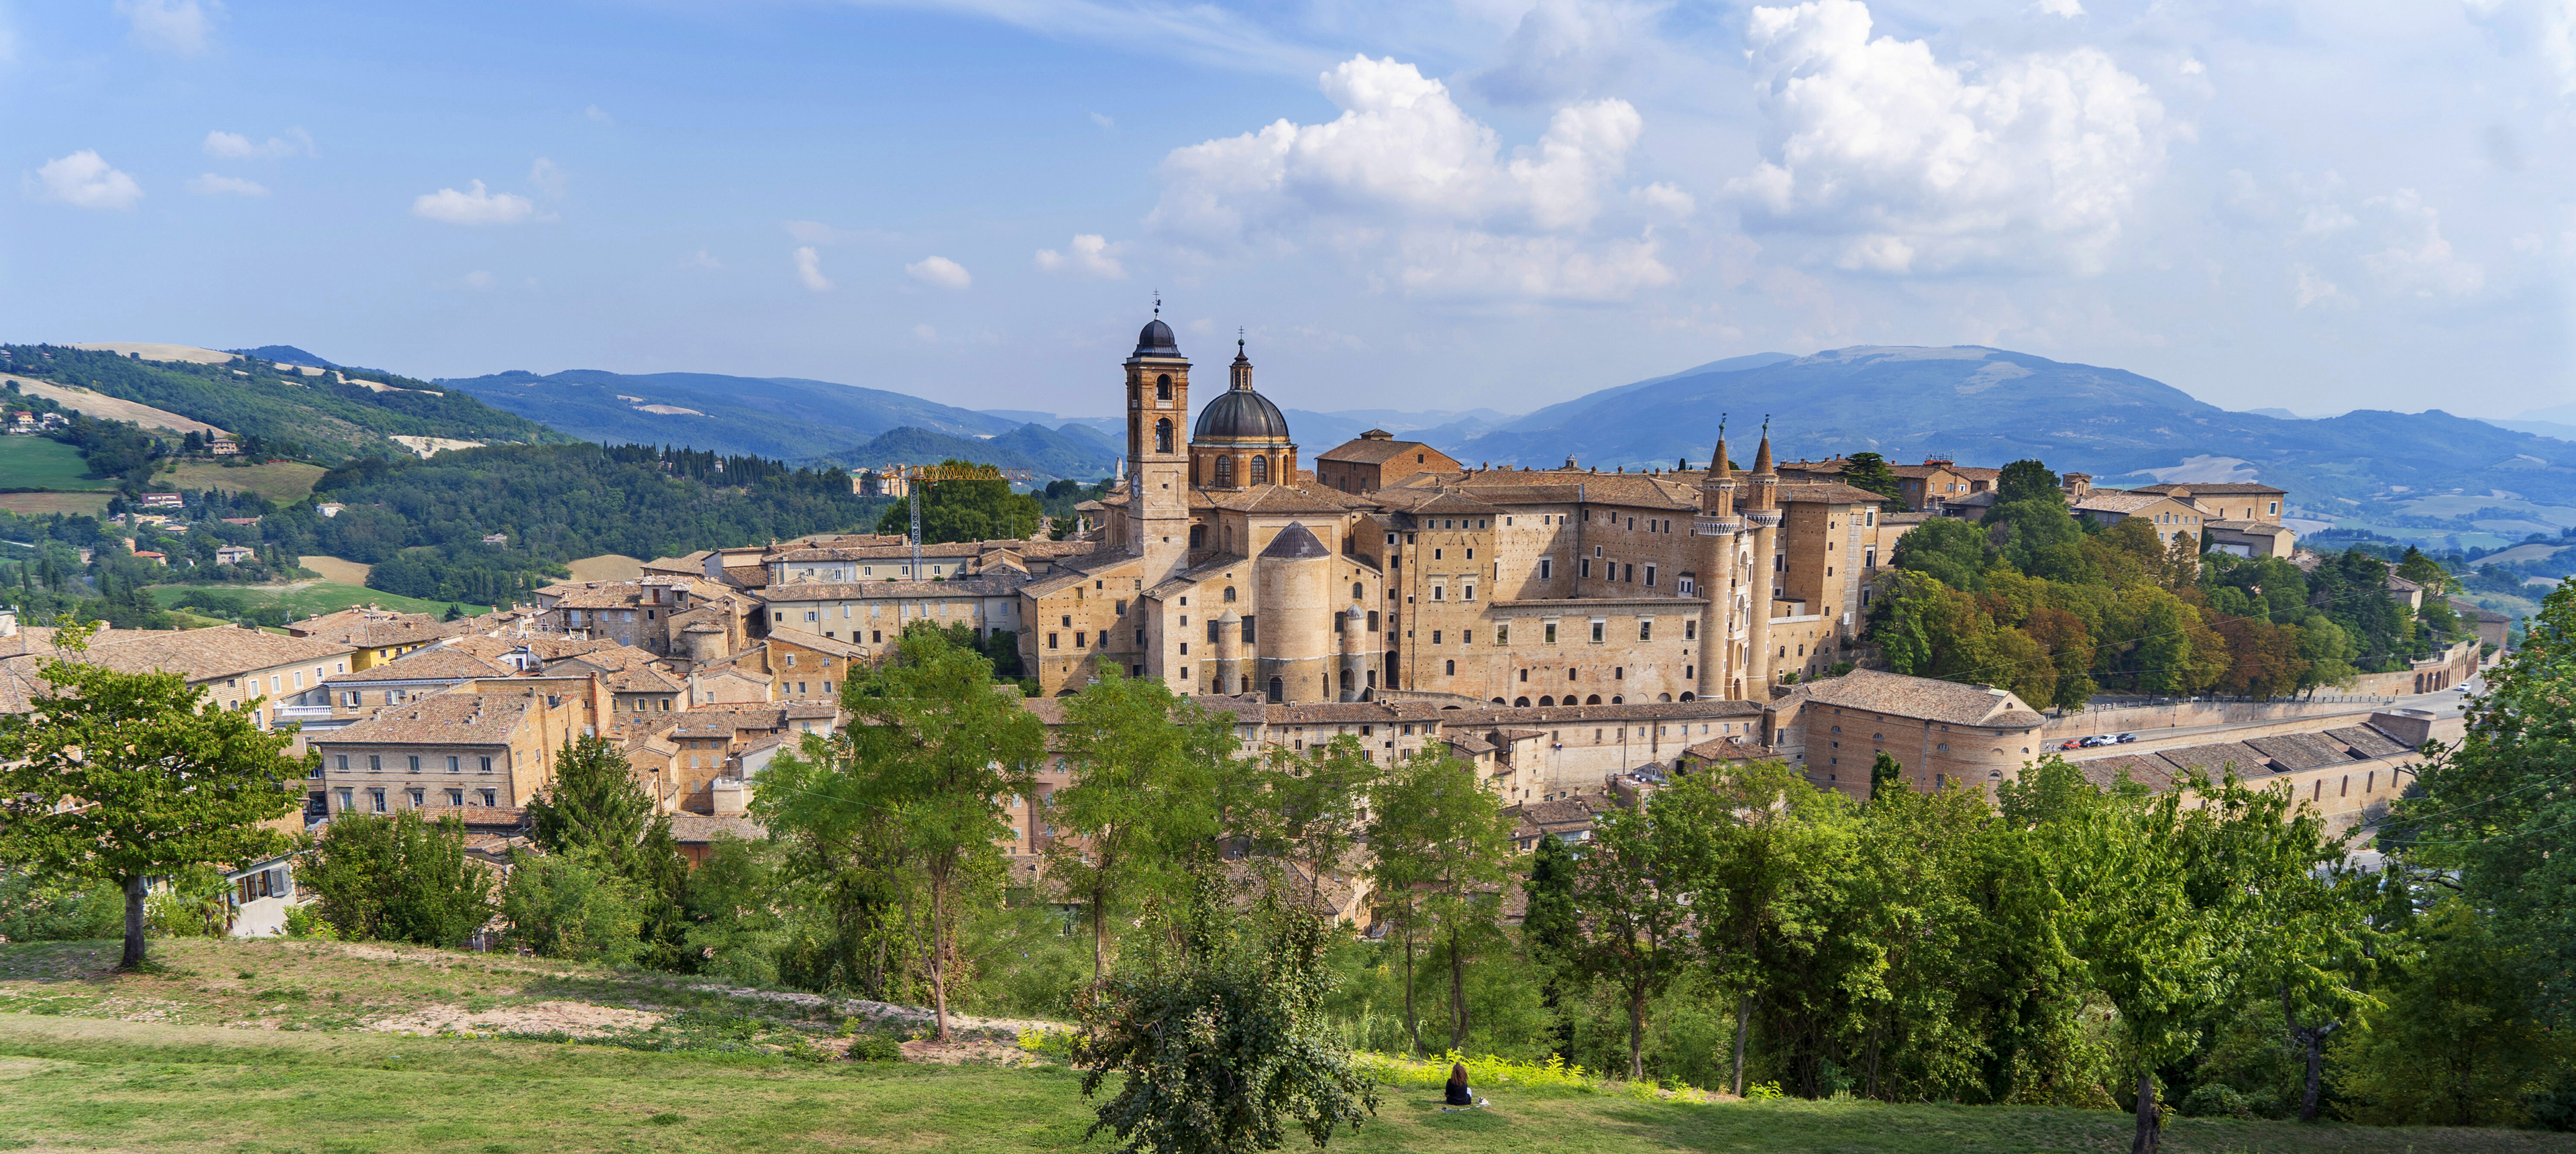 Blick von der Festung Albornoz auf Urbino